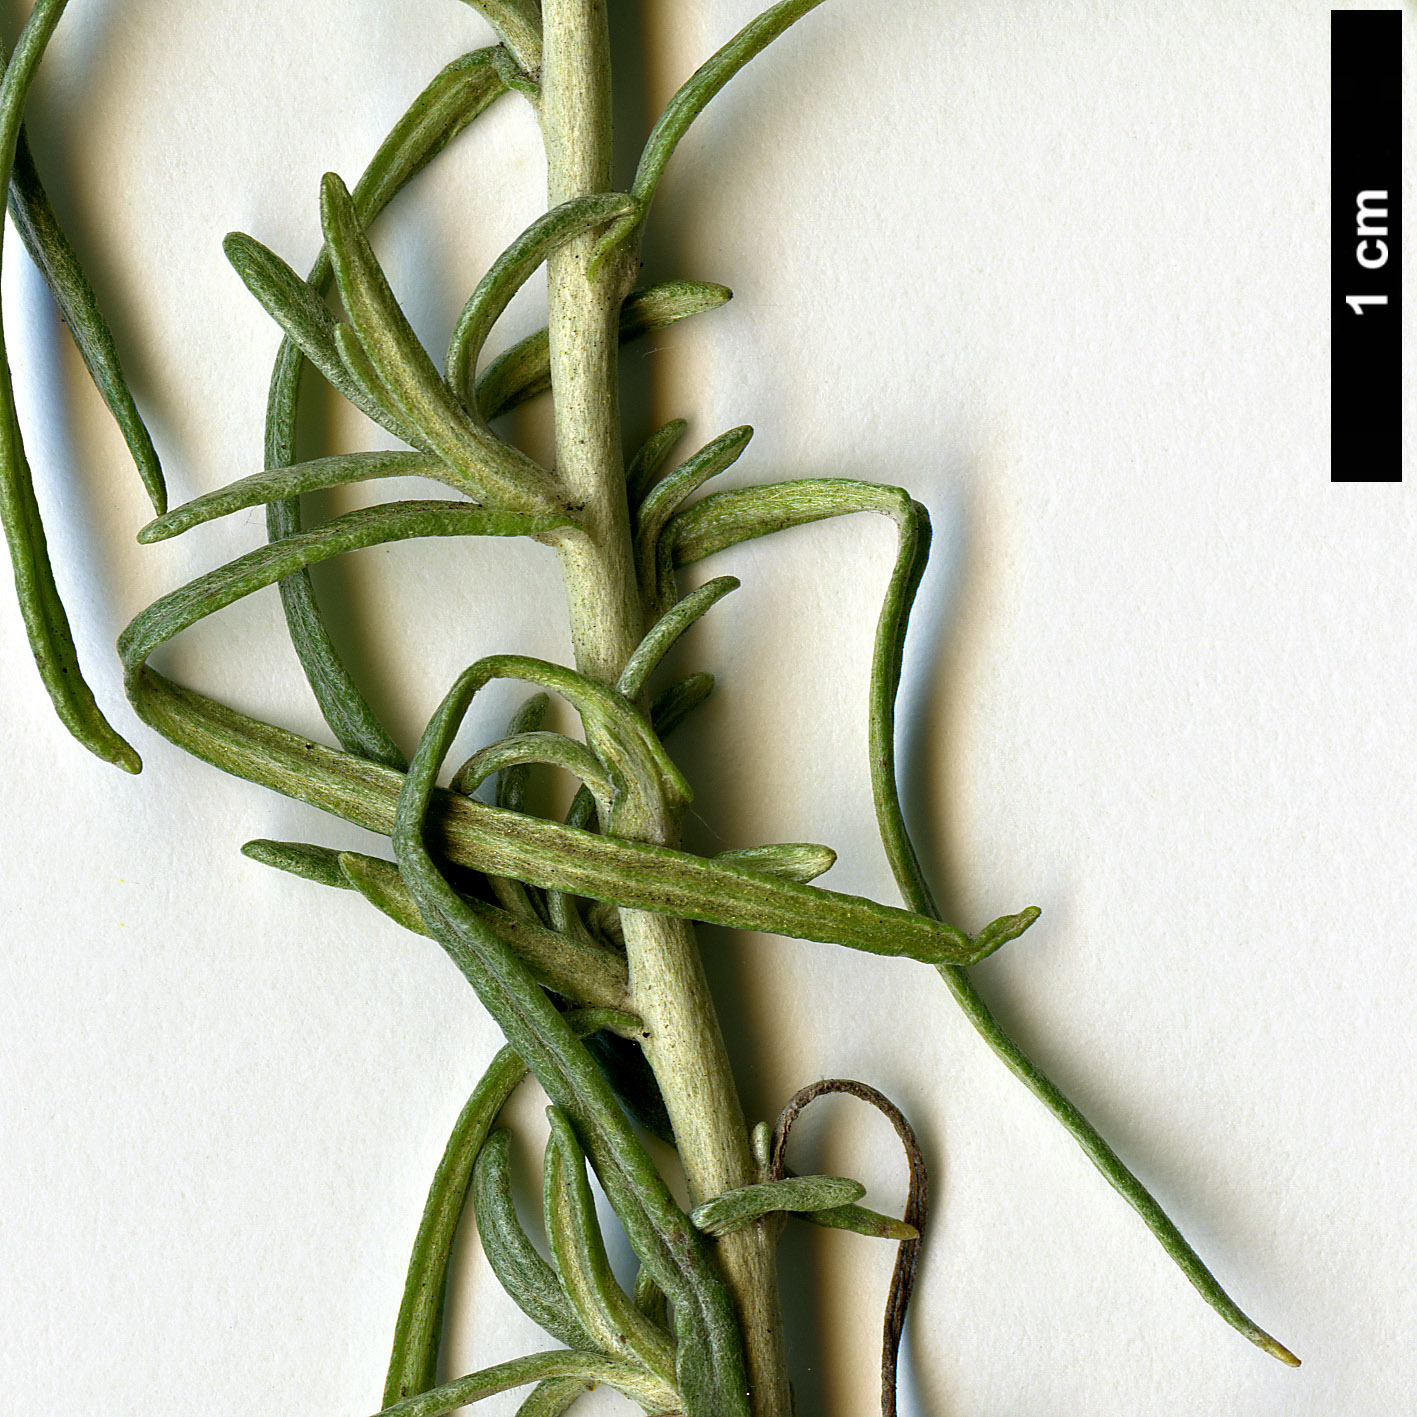 High resolution image: Family: Asteraceae - Genus: Helichrysum - Taxon: italicum - SpeciesSub: subsp. serotinum